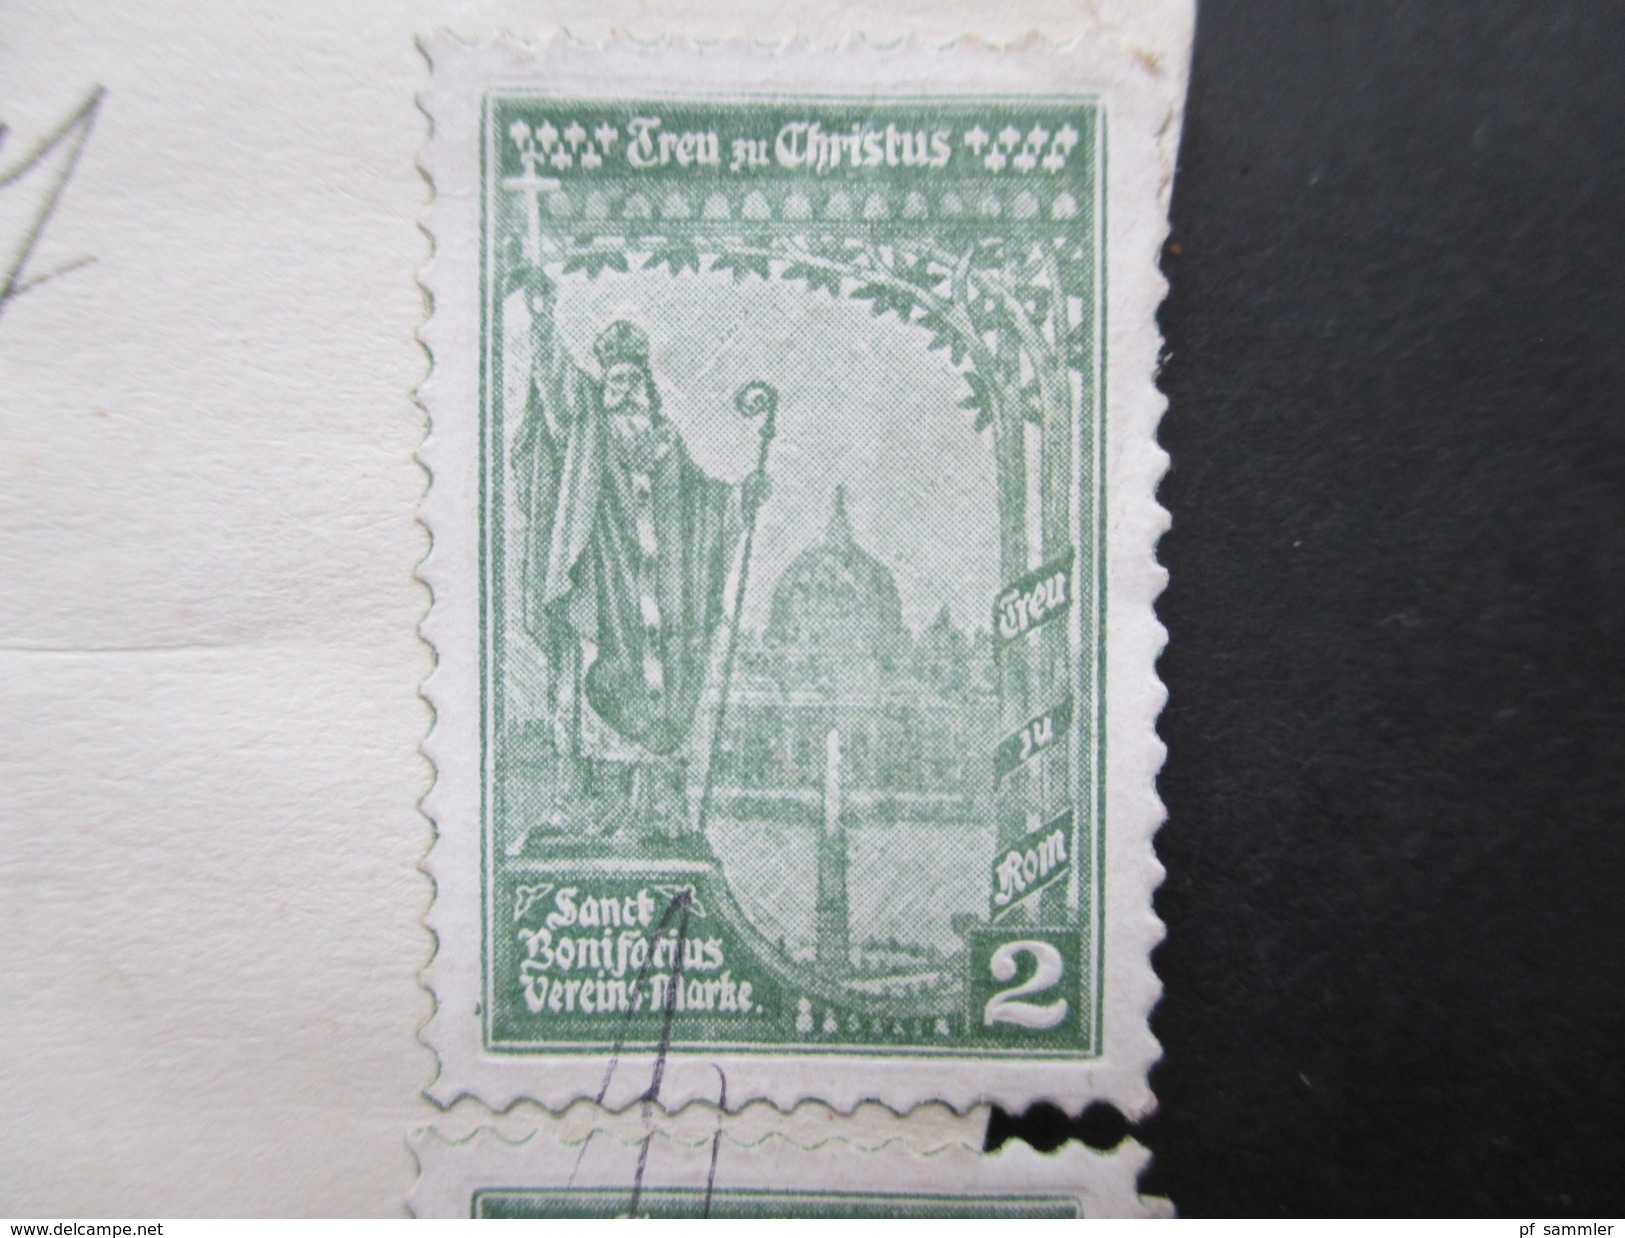 CSSR / Prag 1927 Briefstück Mit 4 Vignetten Treu Zu Christus Sanct Bonifatius Vereins Marke + 6er Streifen Marken! - Christentum